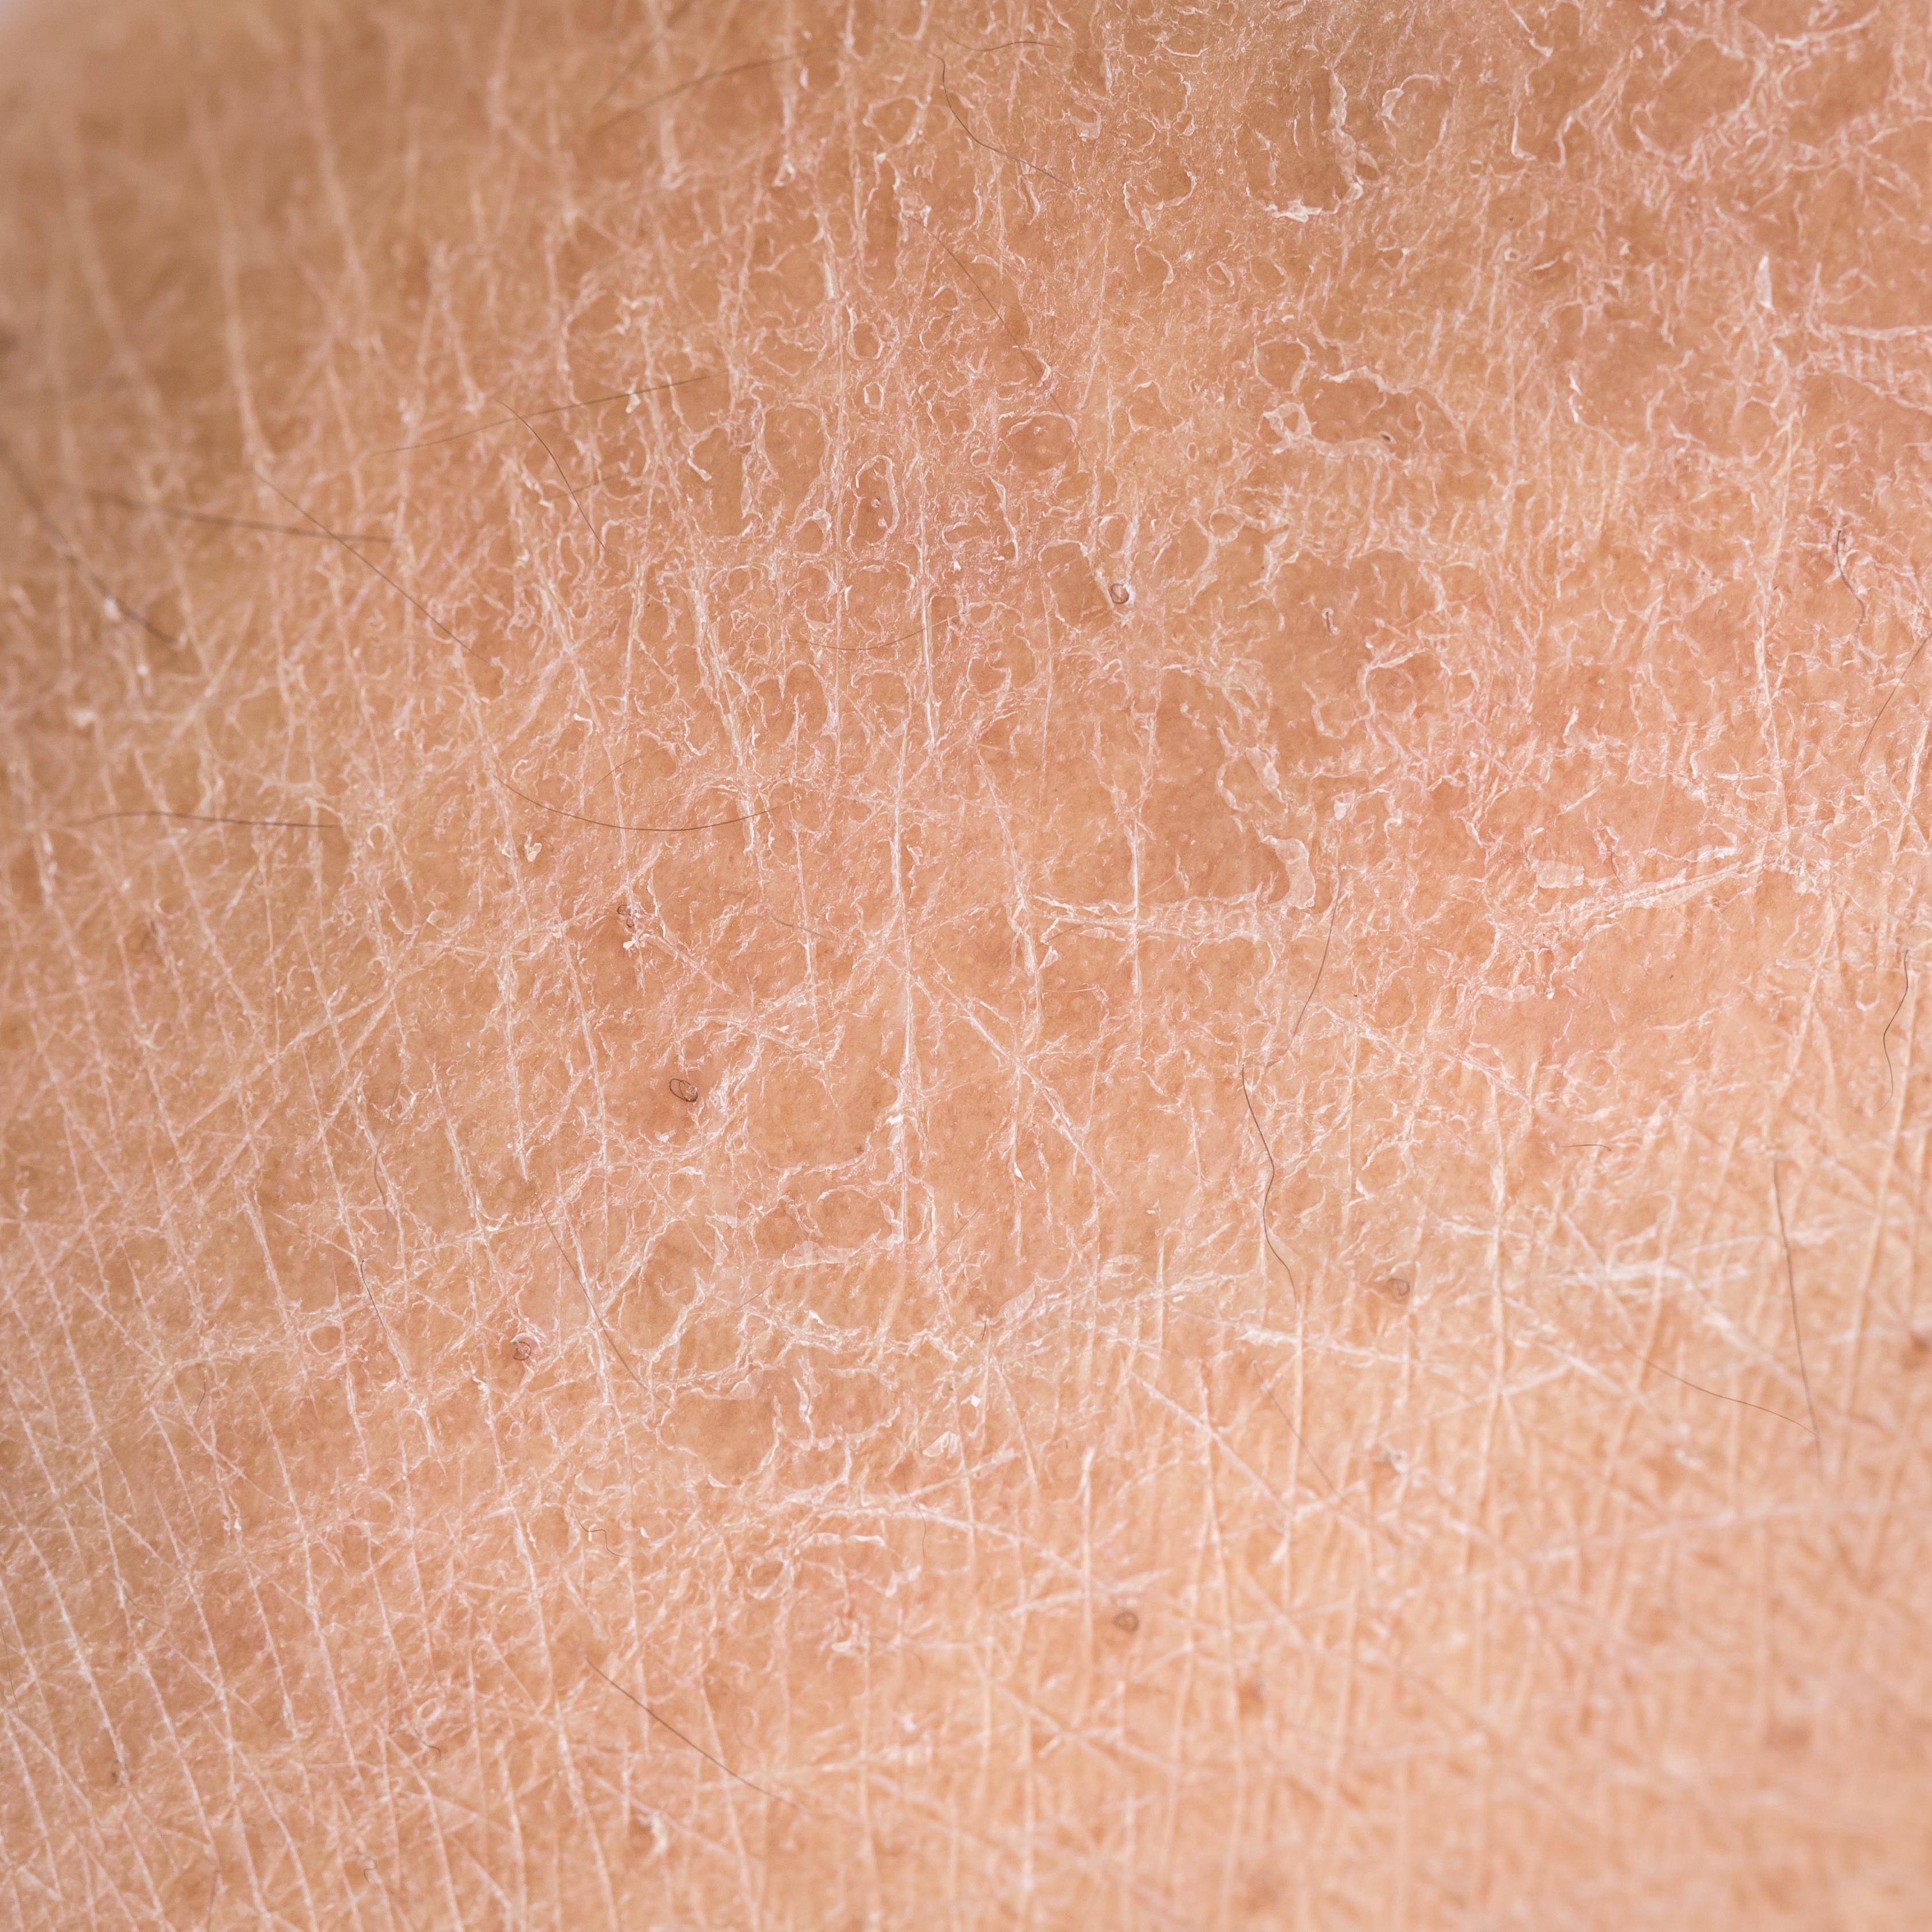 常見皮膚科皮膚病損的形態和分布